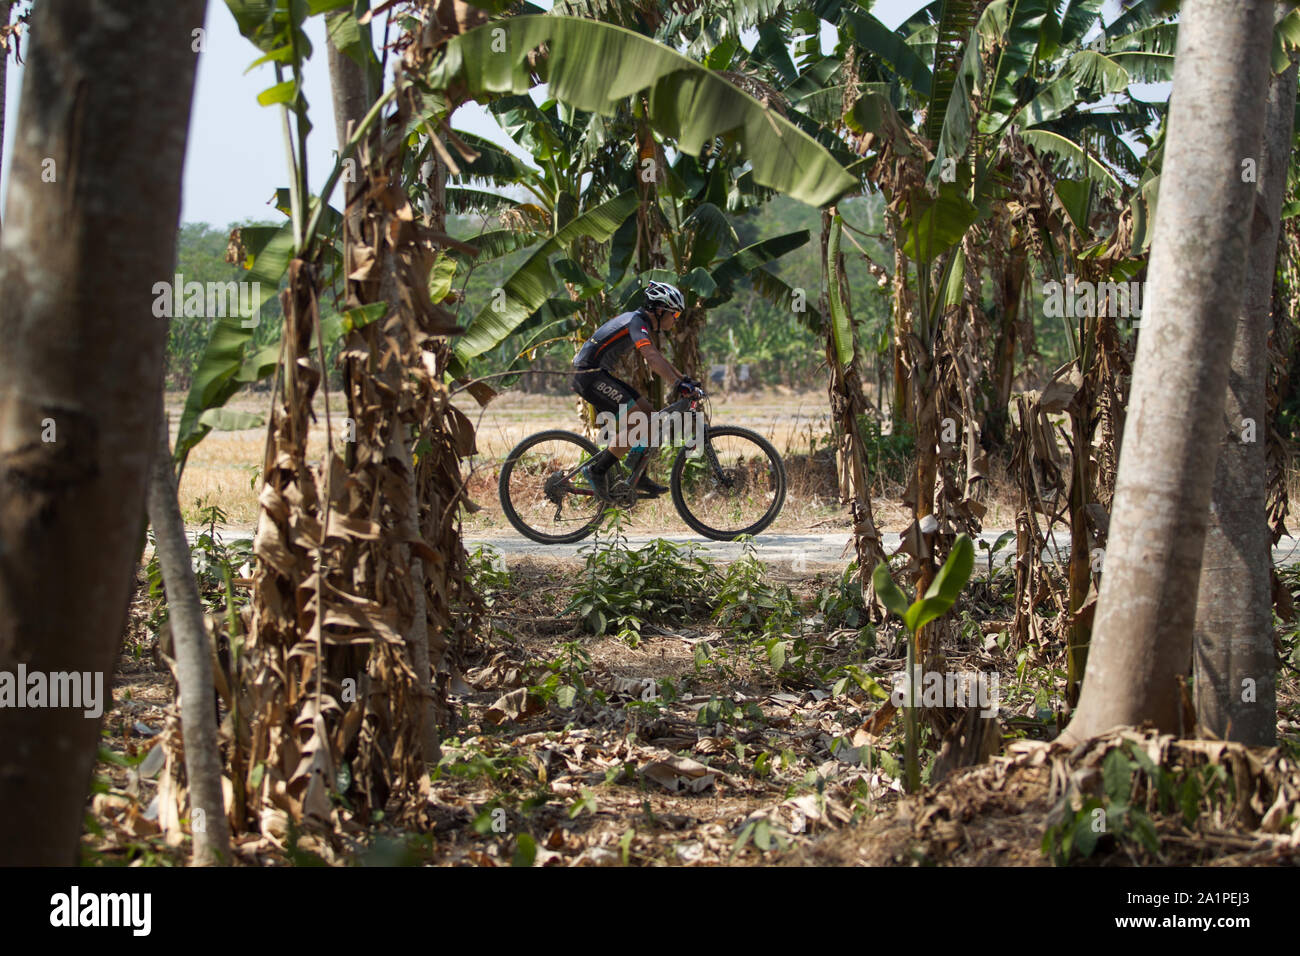 Ein Radfahrer in Aktion während der Rhino MTB XC (Mountainbike Cross Country) Marathon in Pandeglang. Stockfoto